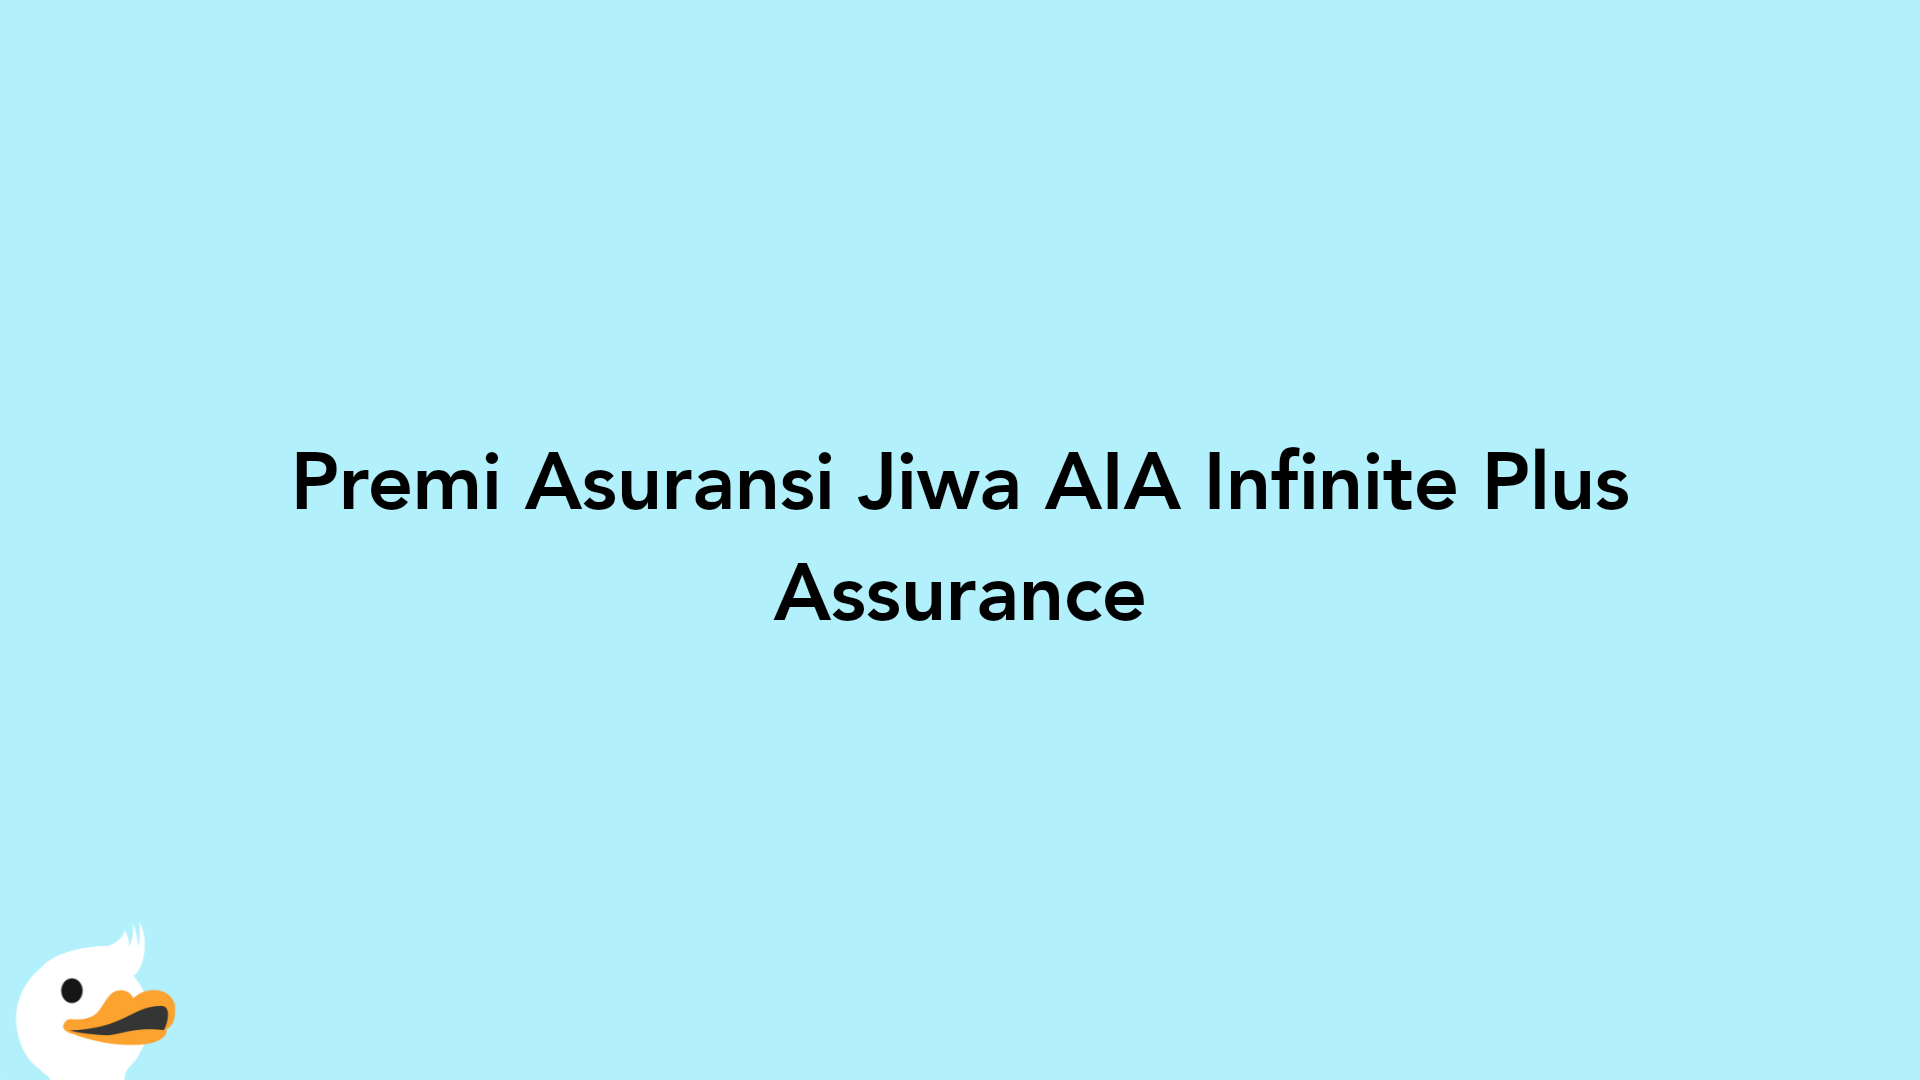 Premi Asuransi Jiwa AIA Infinite Plus Assurance